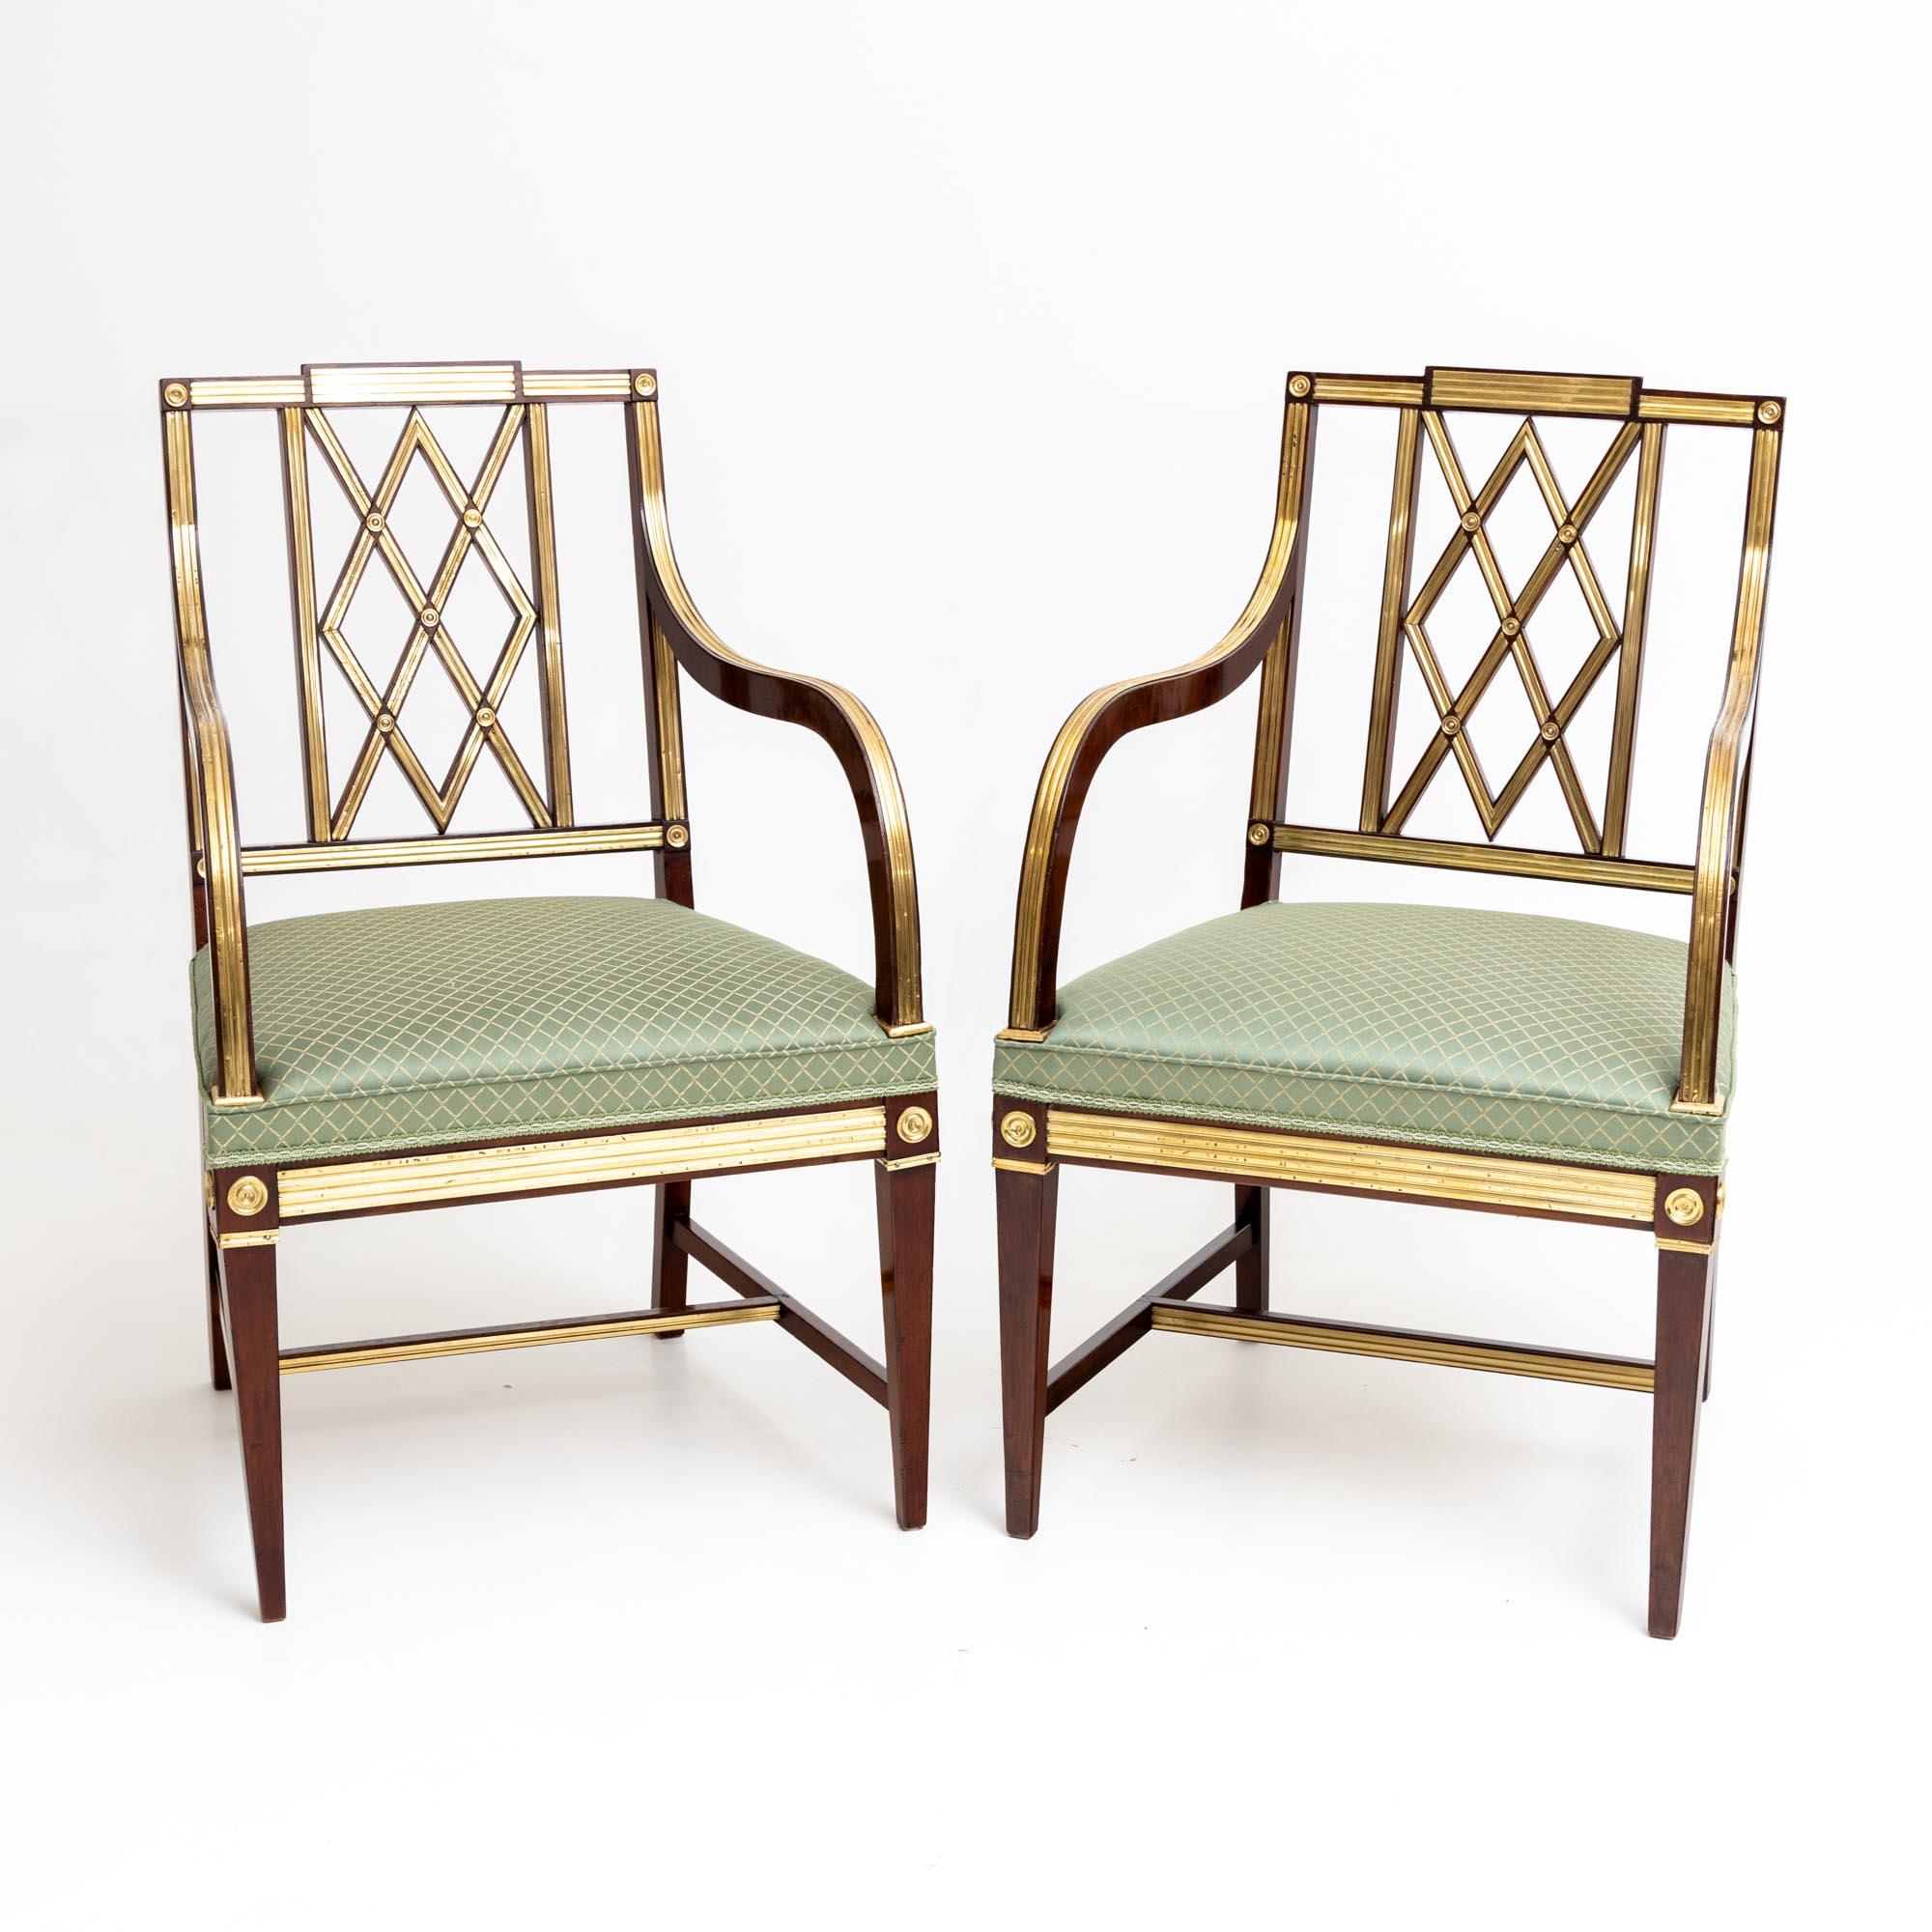 Satz von drei neoklassizistischen Sesseln aus Mahagoni mit Messingdekor und rautenförmigen Verstrebungen in der Rückenlehne. Die Stühle stehen auf quadratischen, konischen Beinen mit H-förmigen Streben. Die Sitze sind mit einem feinen hellgrünen